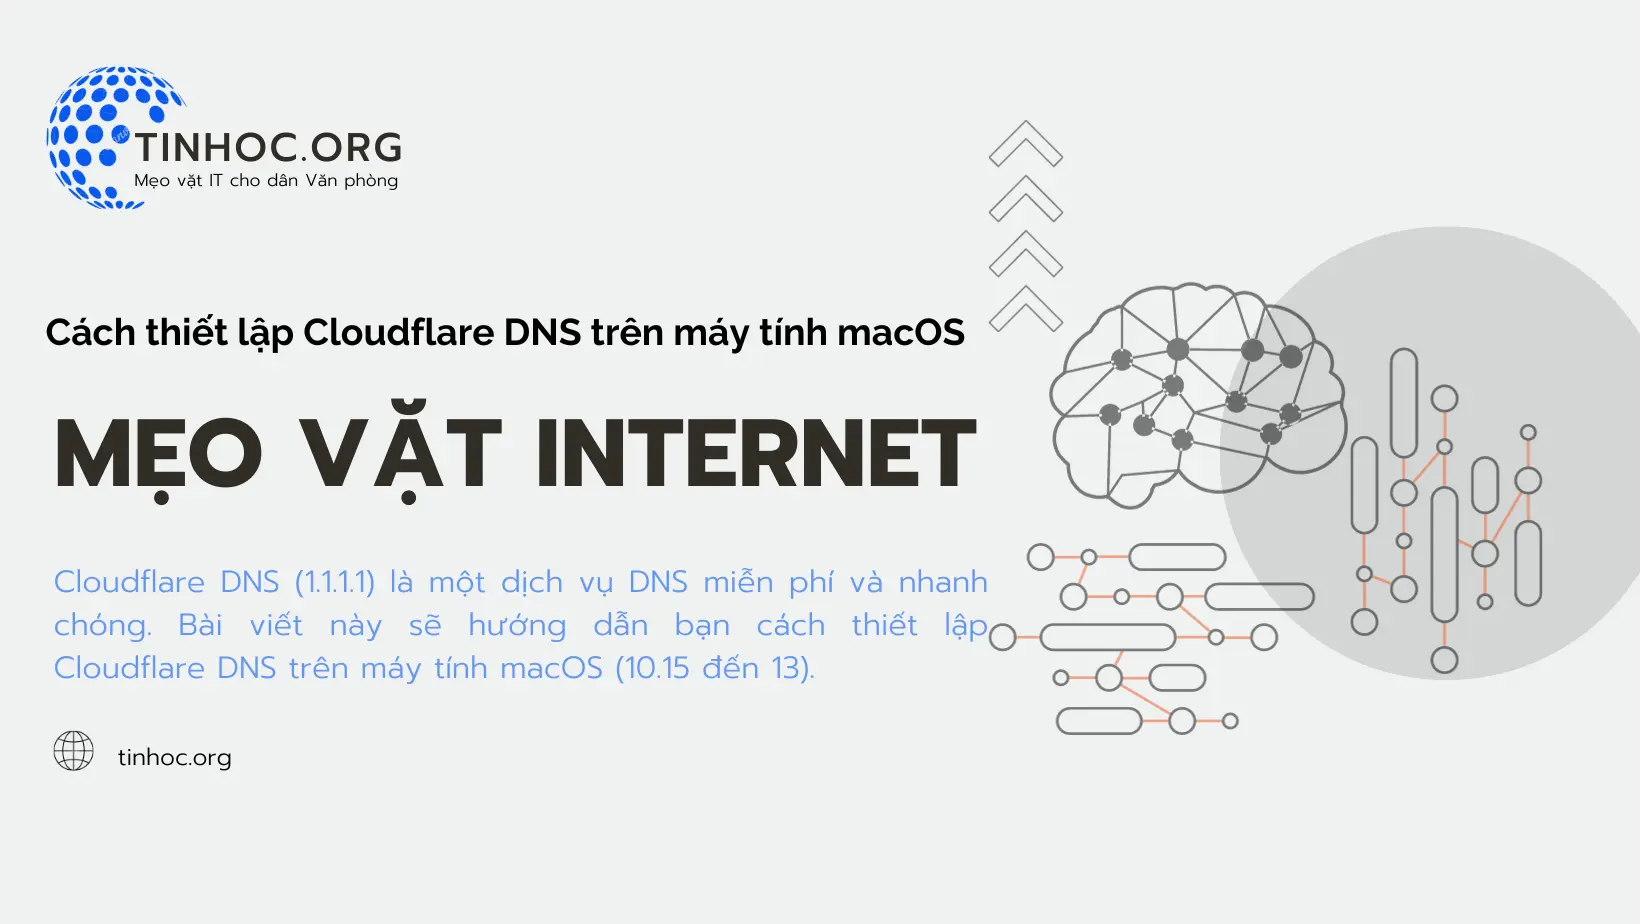 Cách tăng tốc độ duyệt web, bảo vệ quyền riêng tư và ngăn chặn các cuộc tấn công DNS trên macOS (10.15 đến 12).